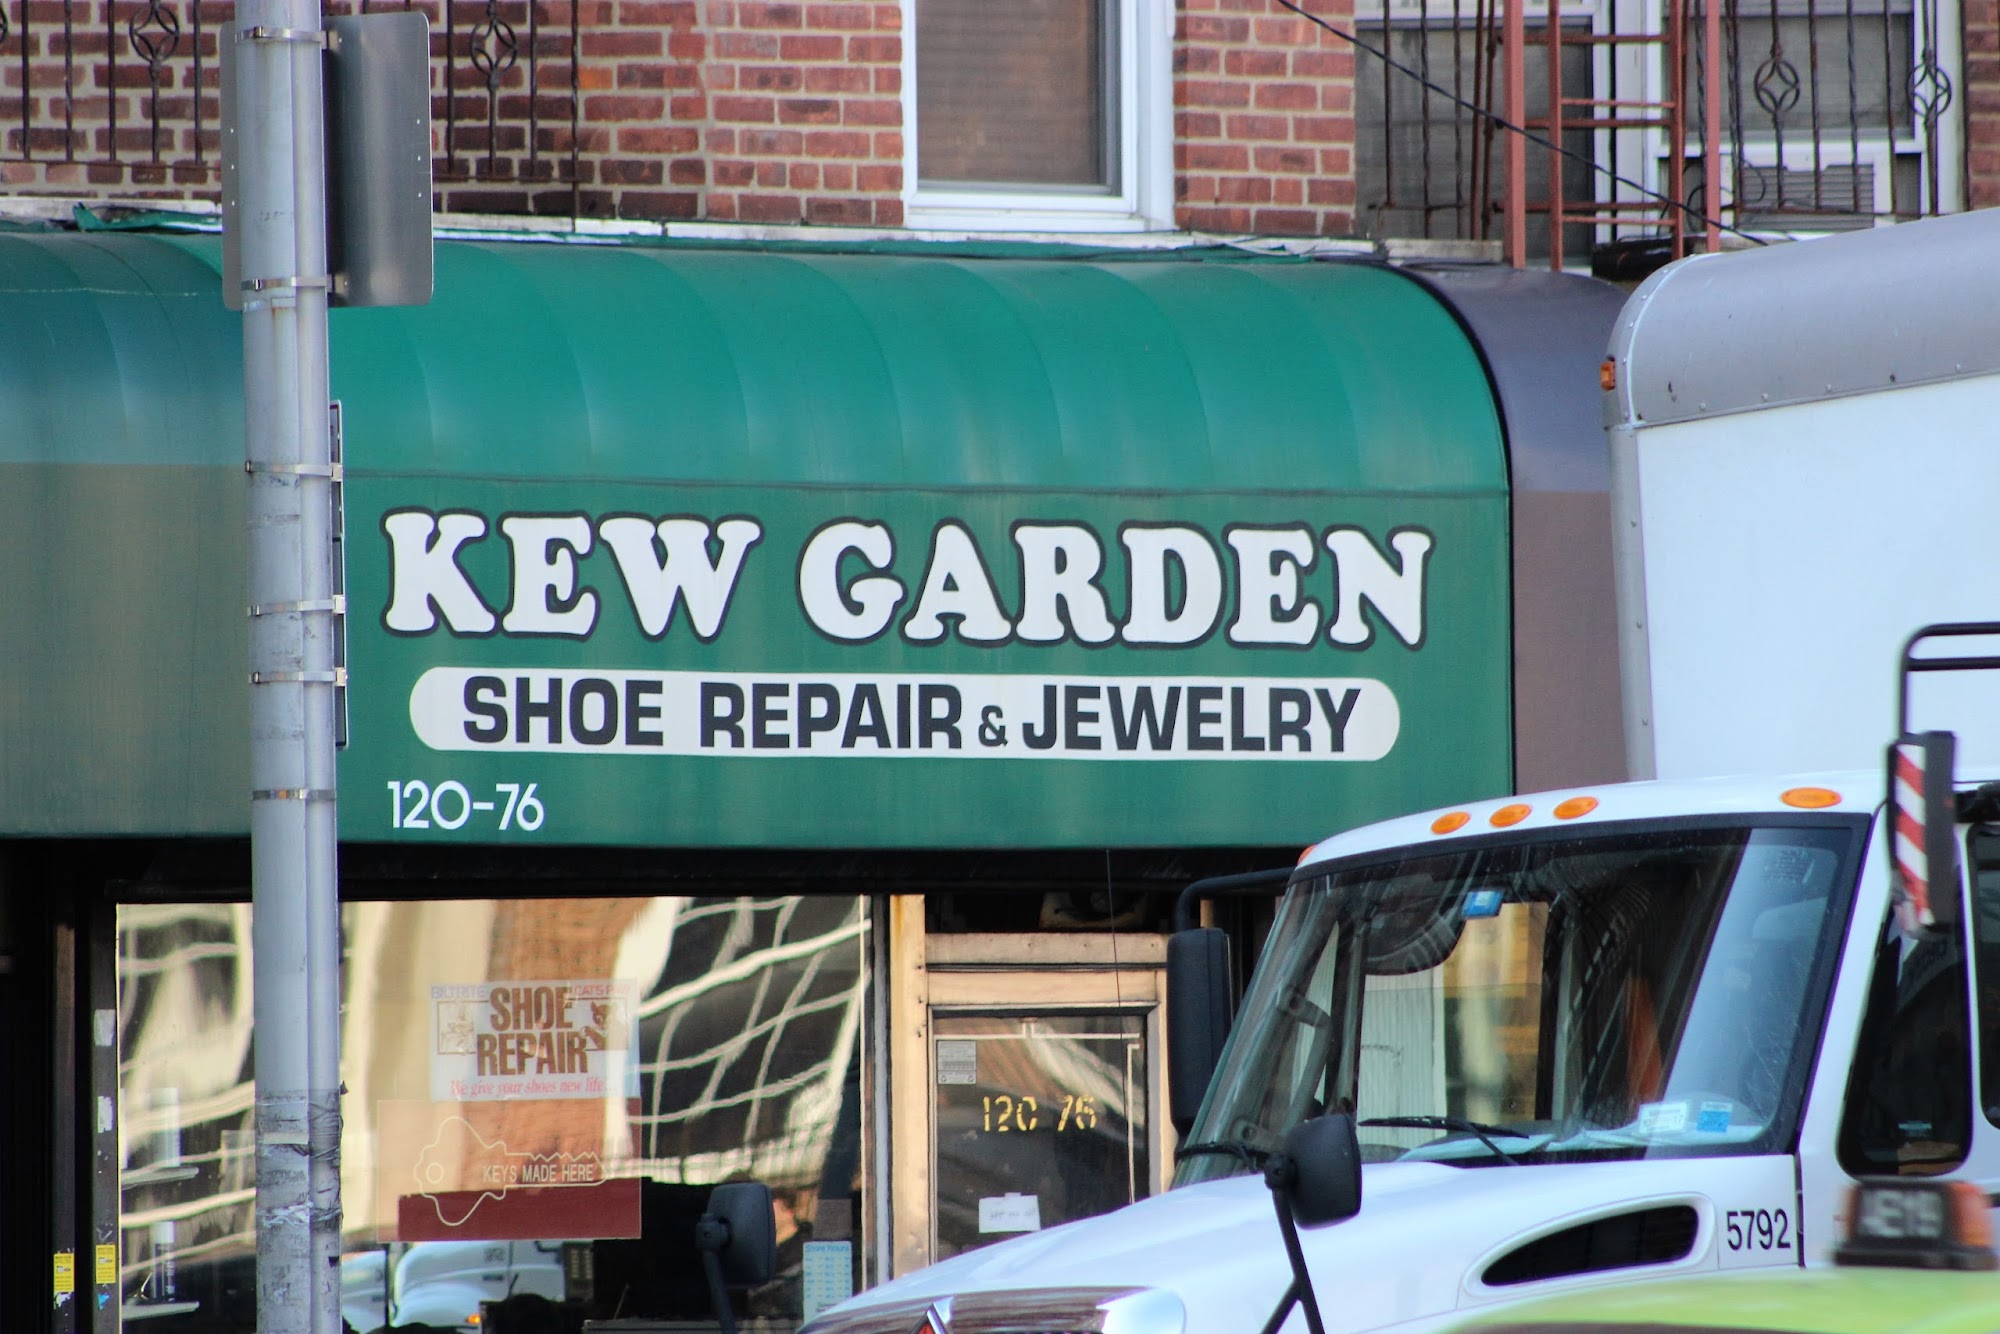 Kew Garden Shoe Repair 120-76 Queens Blvd, Kew Gardens New York 11415